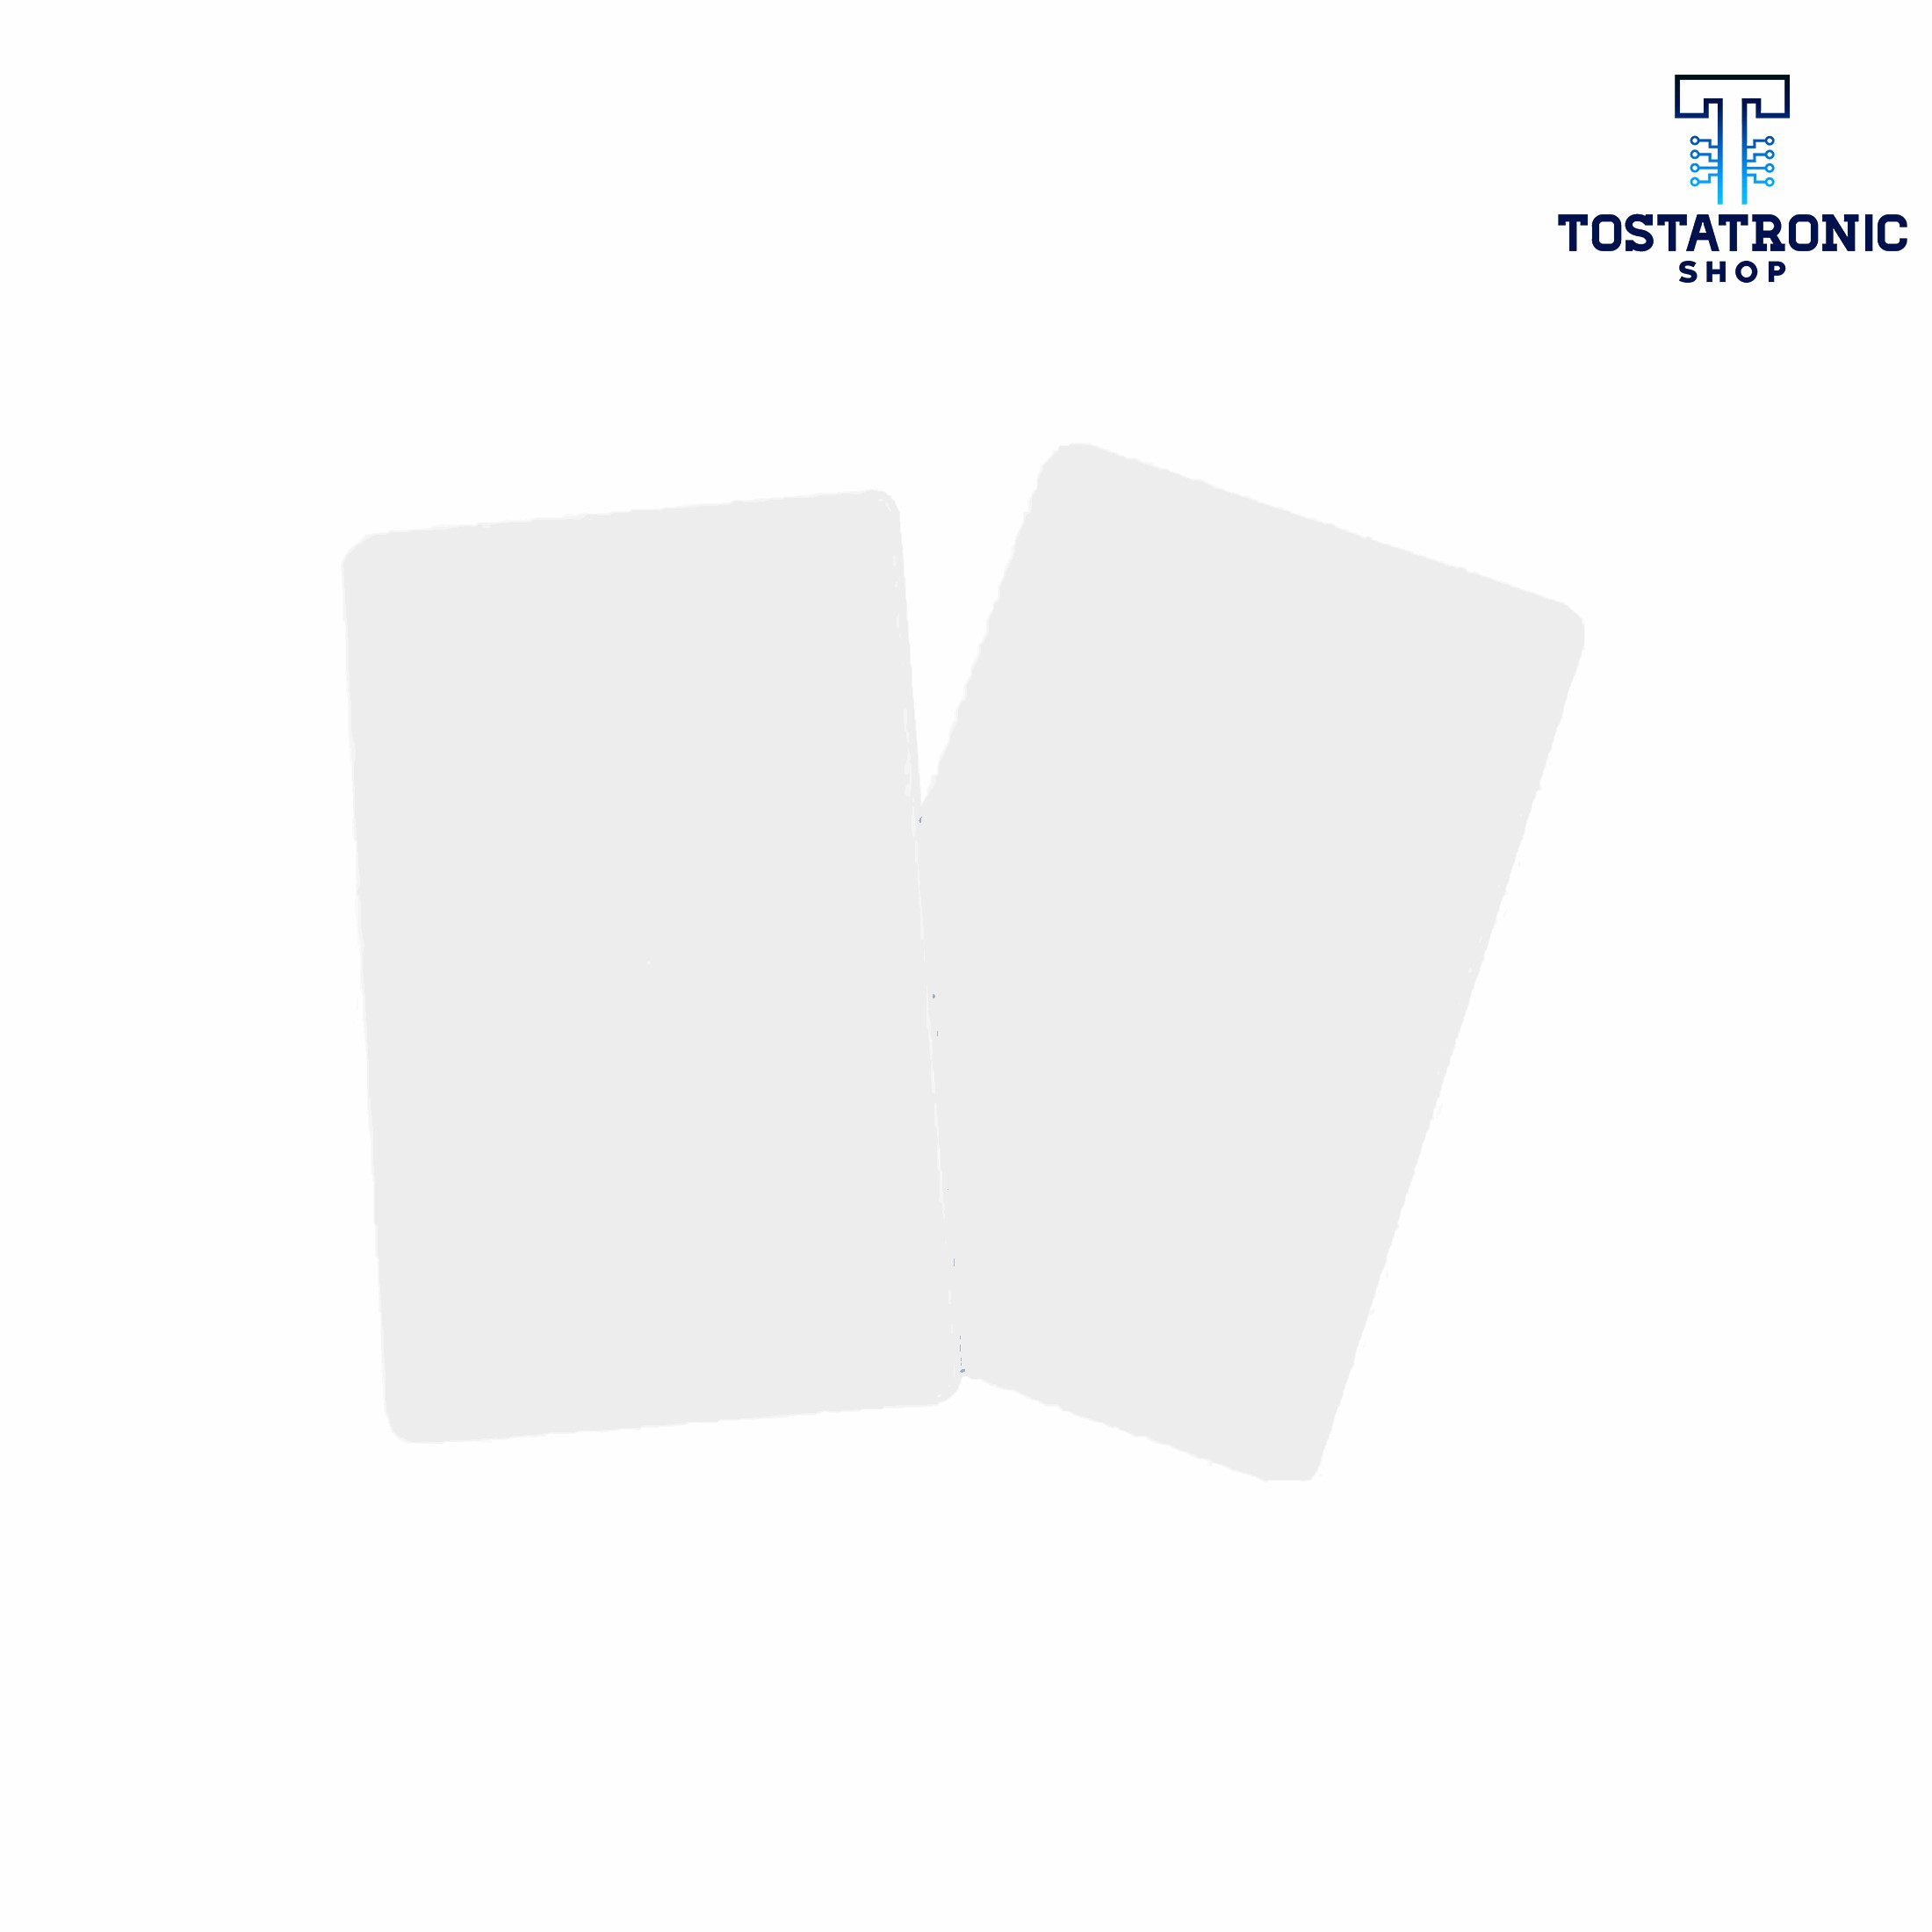 Timeskey NFC, 10 unidades de etiquetas NFC NTAG215 de resina de cristal  compatibles con Amiibo TagMo para todos los teléfonos habilitados para NFC  por